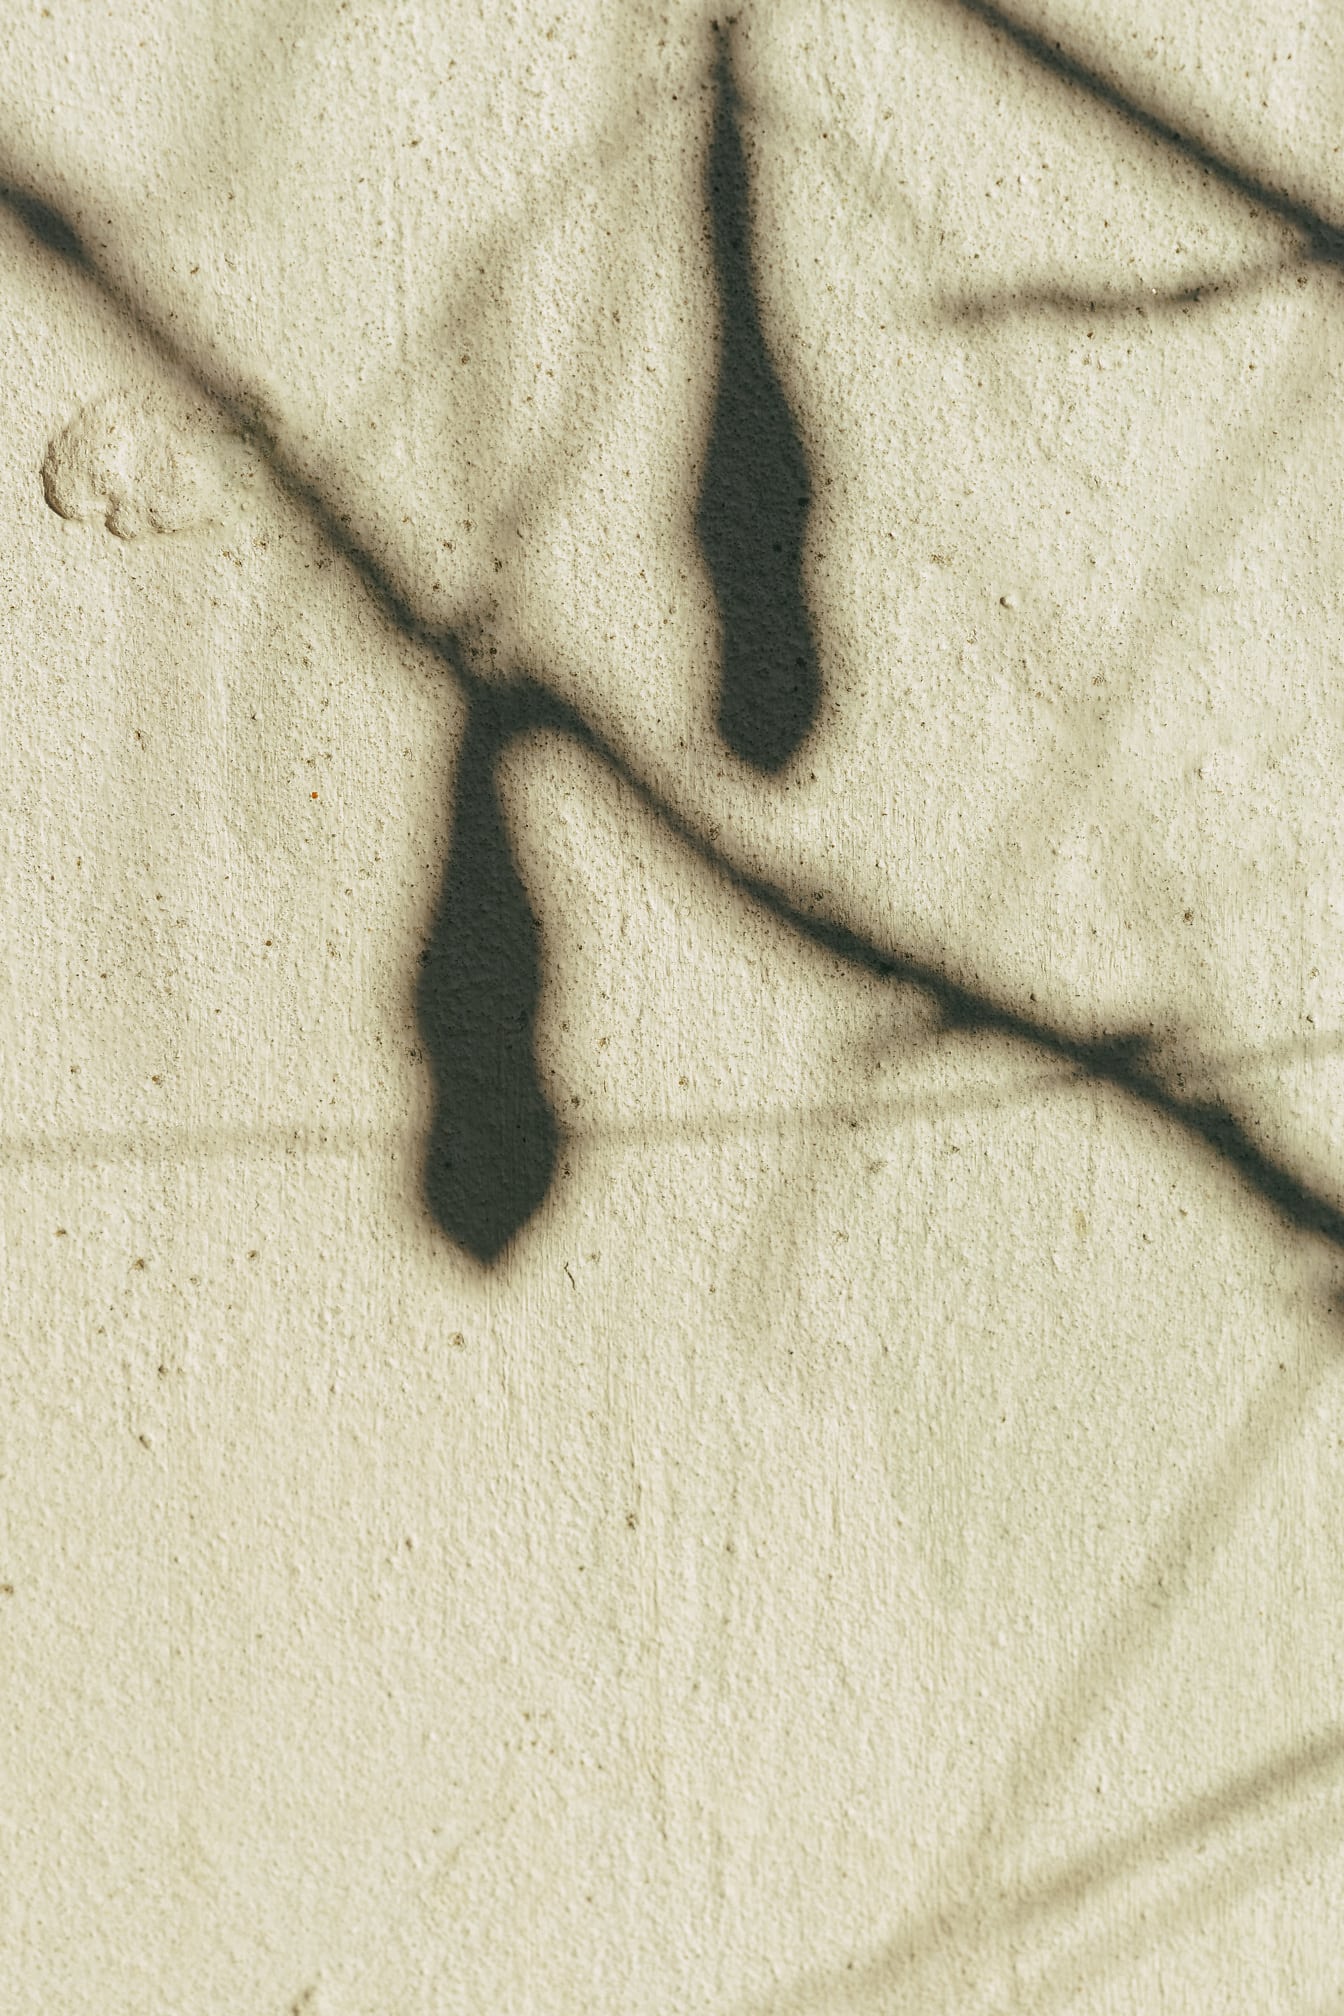 Textur av skuggan av grenar på gulaktig grov vägg